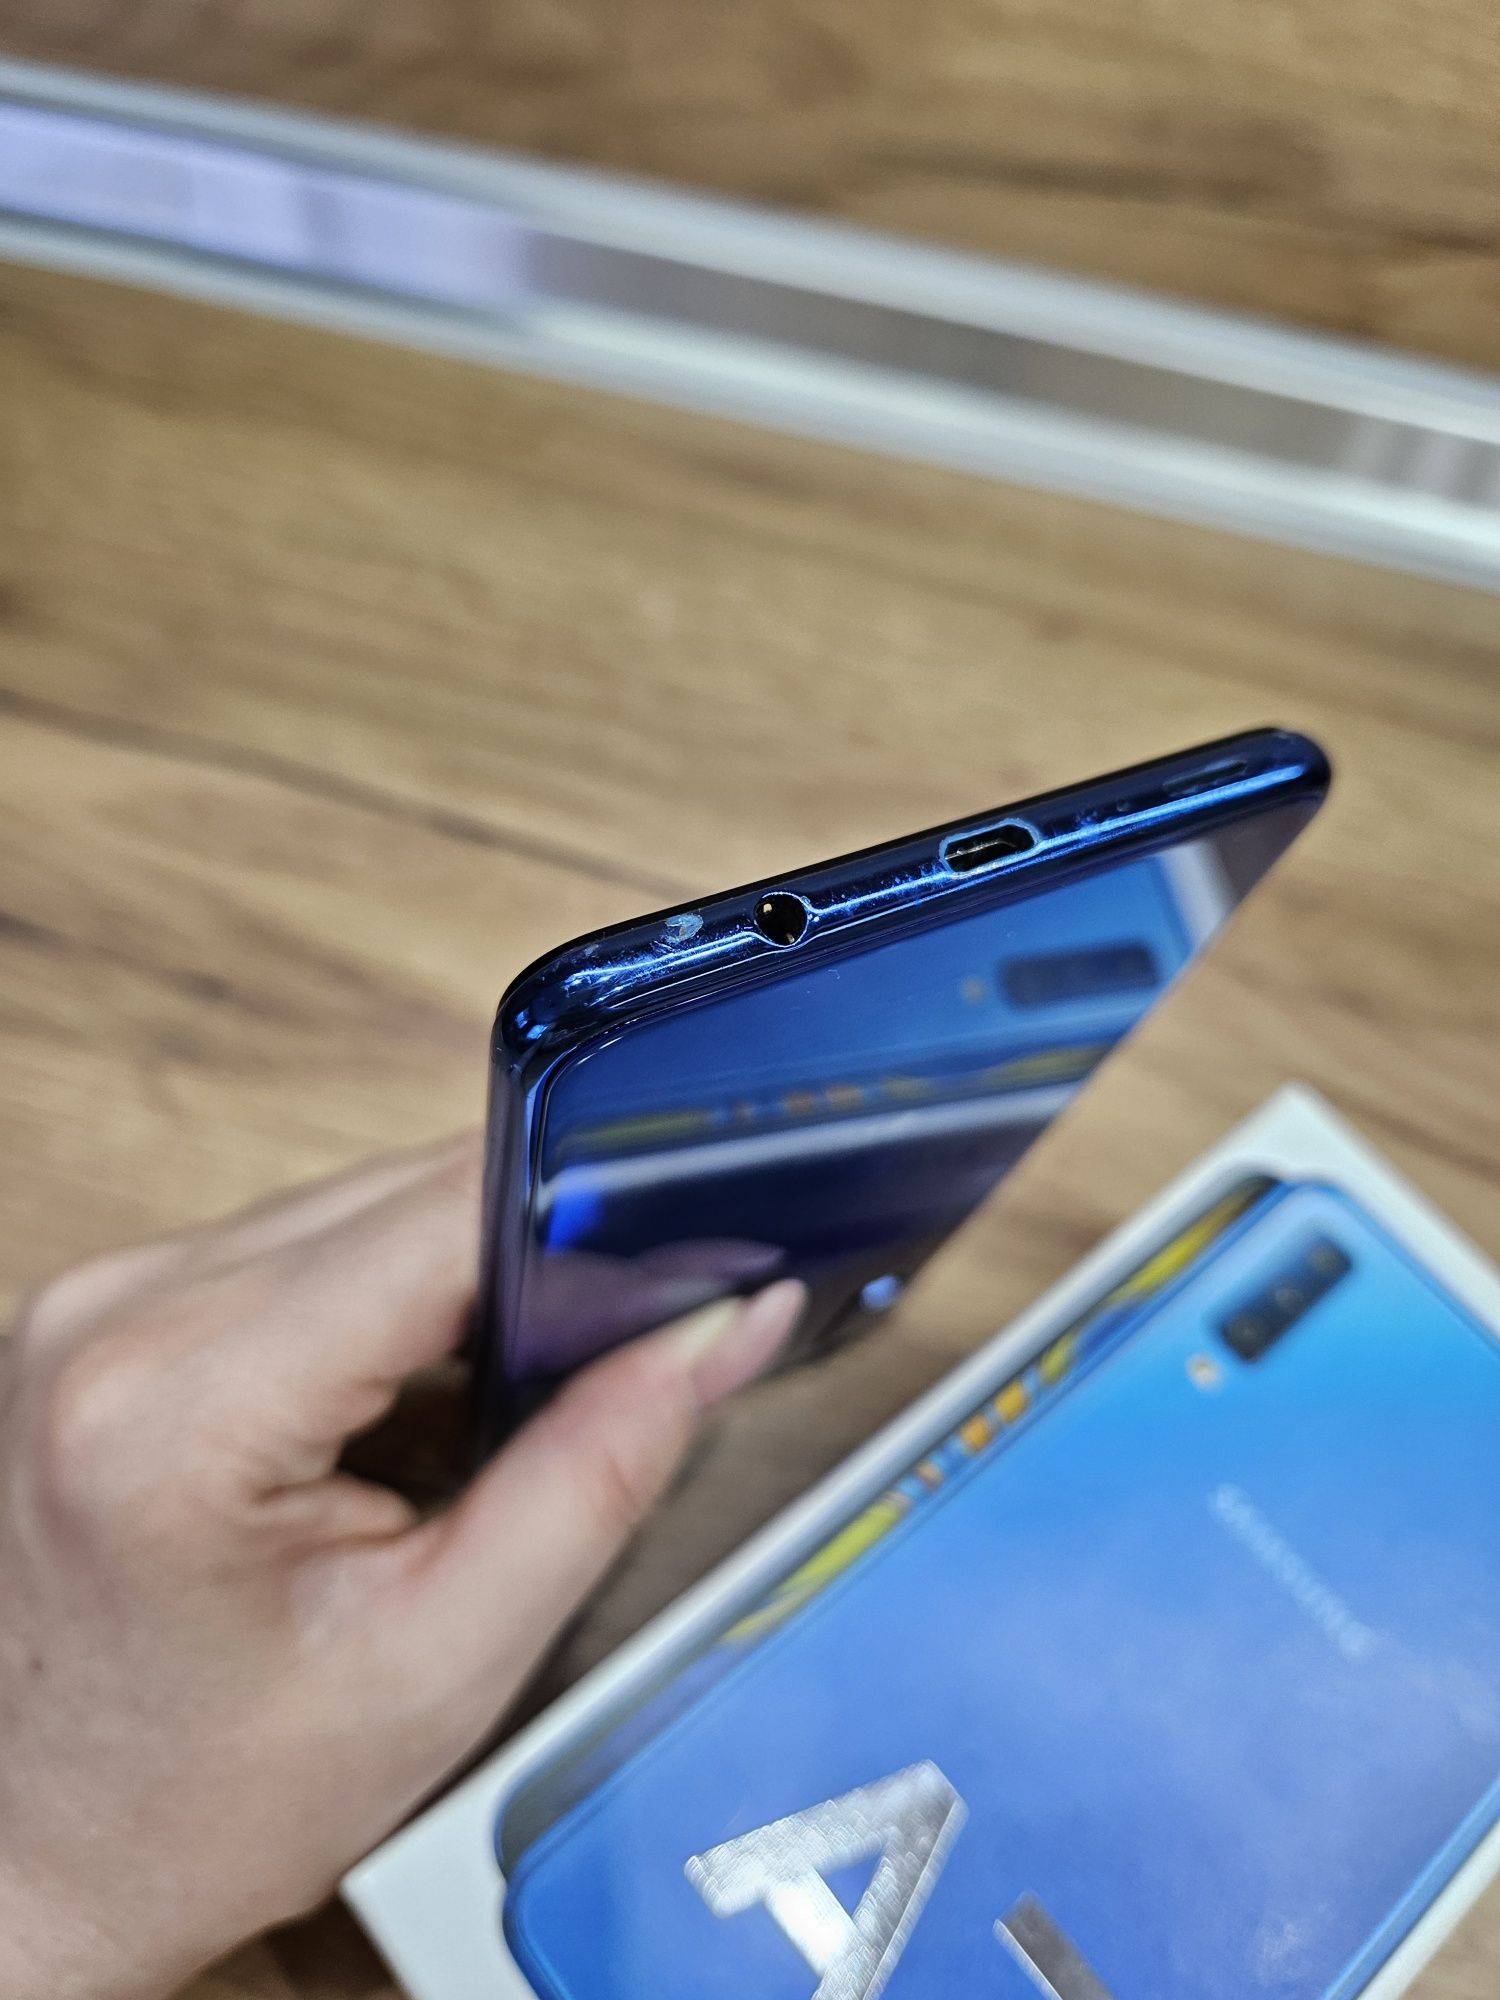 Samsung Galaxy A7 (2018) Blue 64GB/ RAM 4GB